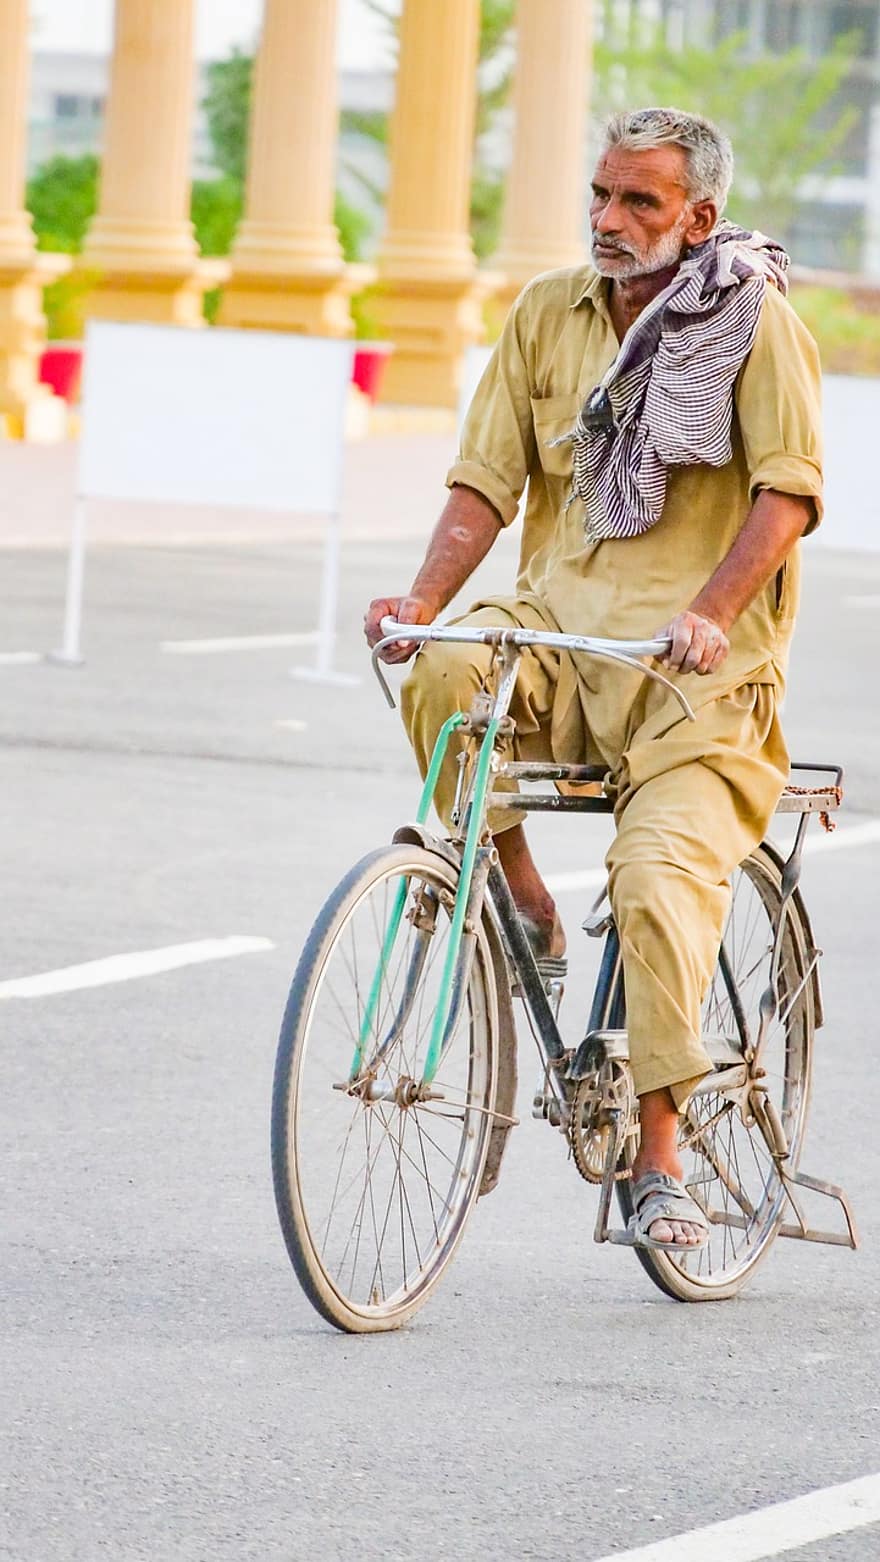 ชายชรา, สูงอายุ, รถจักรยาน, คนขี่จักรยาน, จักรยาน